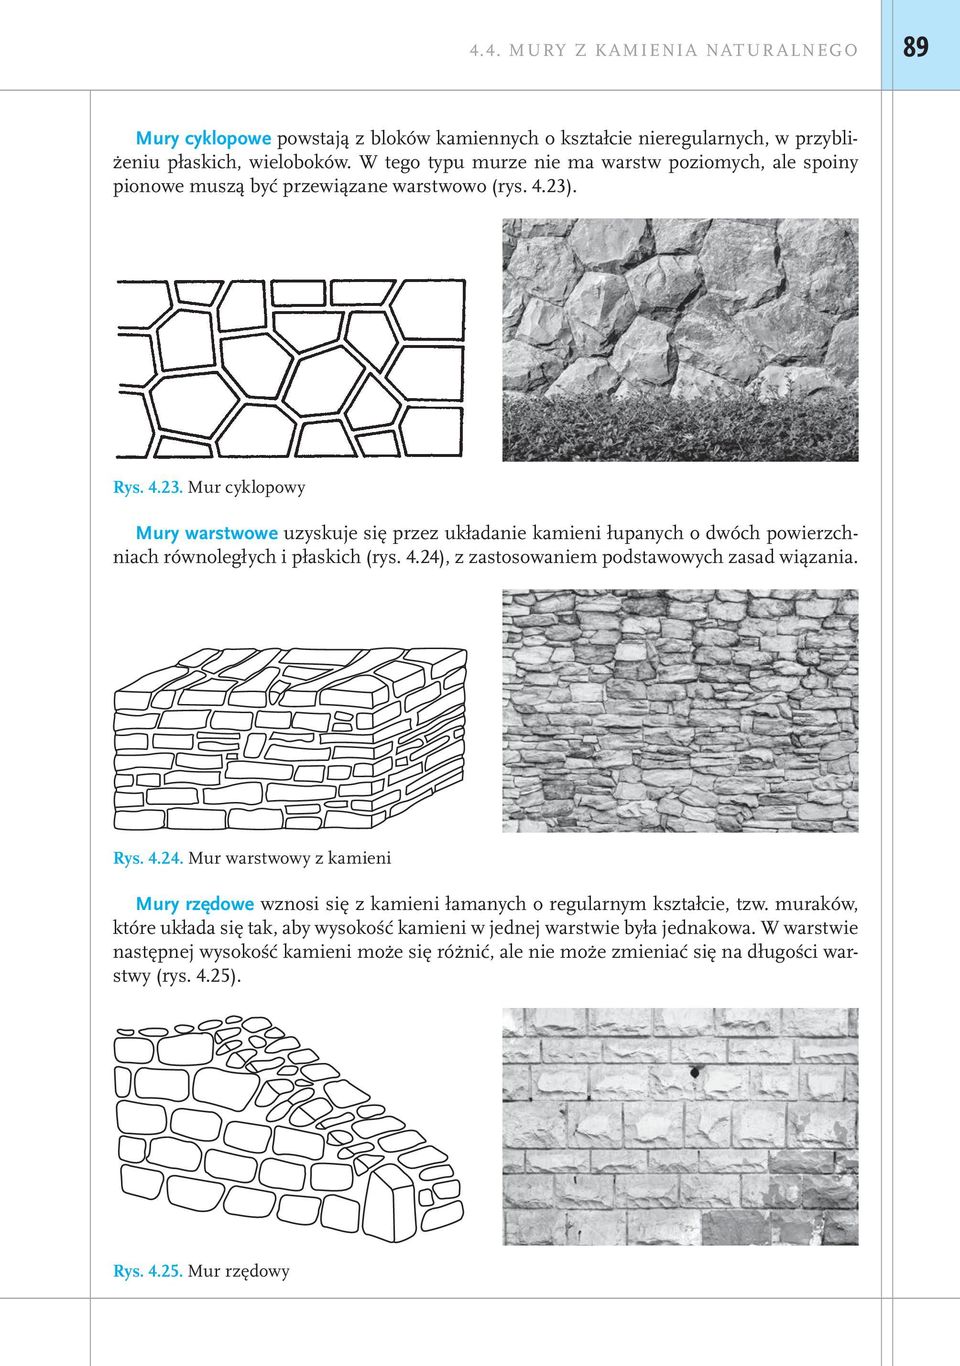 . Rys. 4.23. Mur cyklopowy Mury warstwowe uzyskuje się przez układanie kamieni łupanych o dwóch powierzchniach równoległych i płaskich (rys. 4.24), z zastosowaniem podstawowych zasad wiązania.